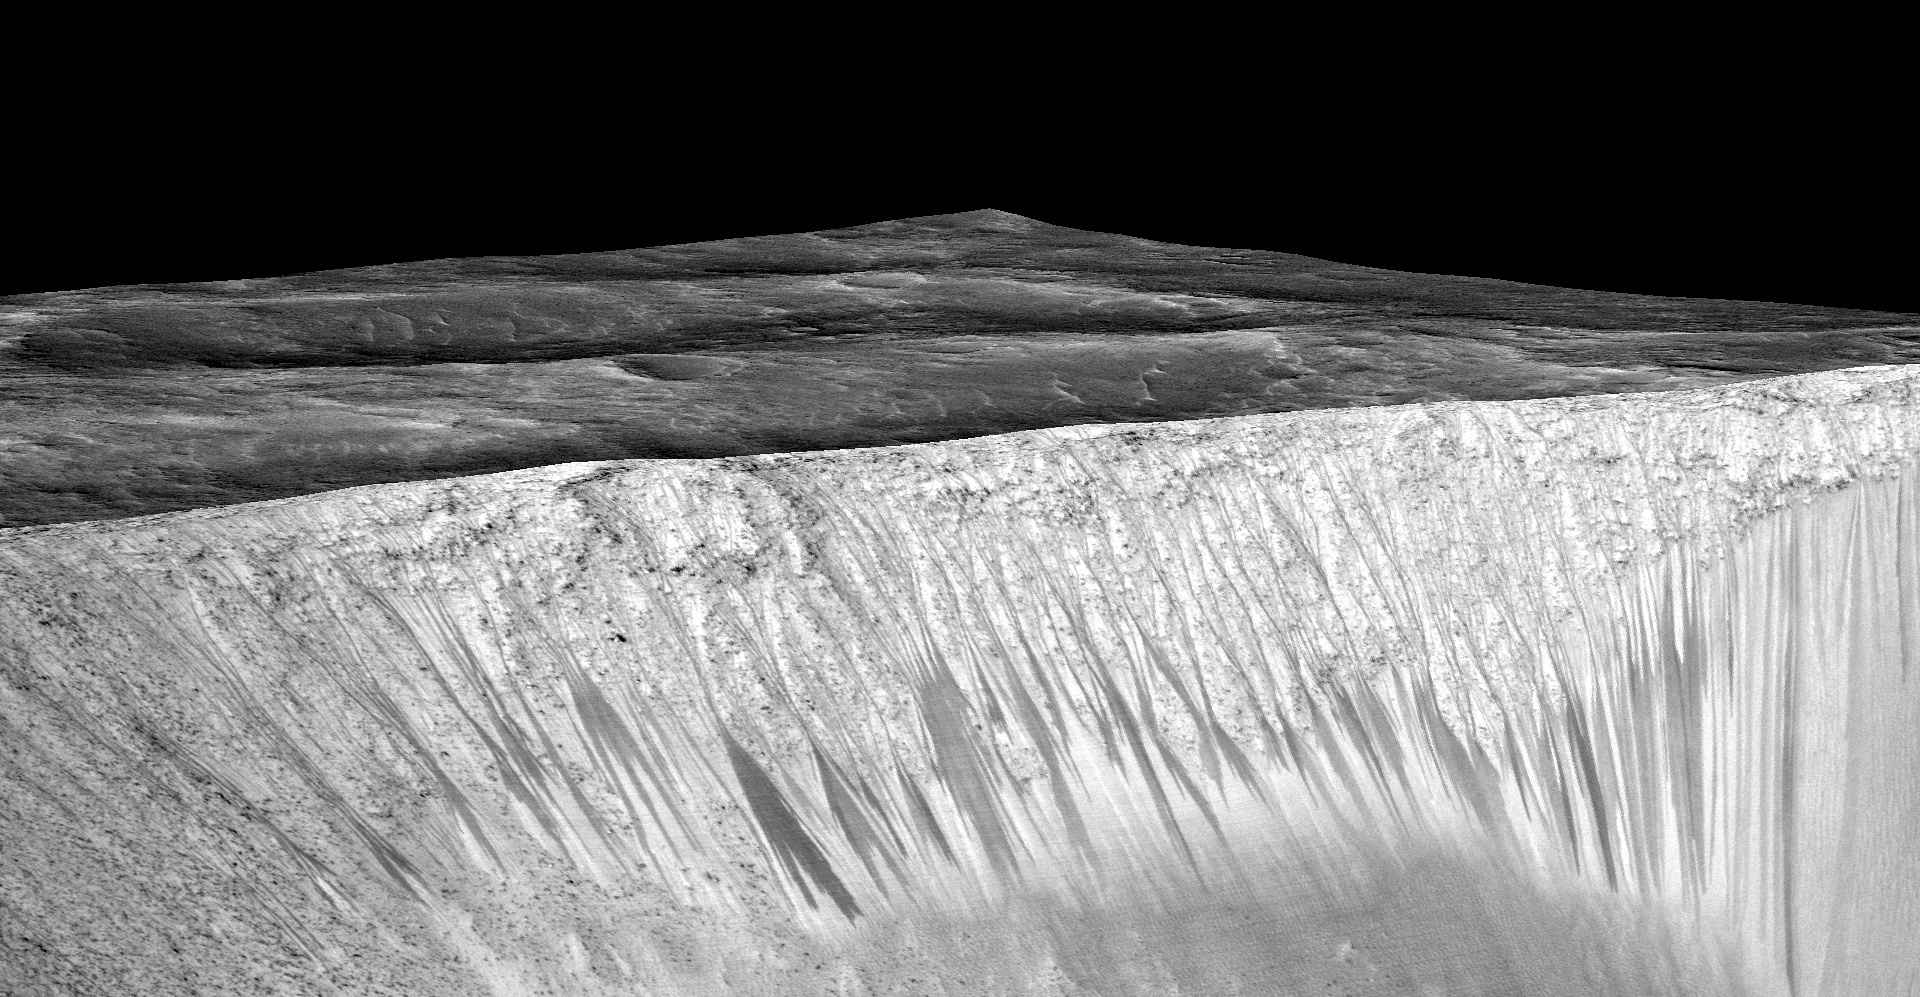 zhidkaya voda na Marse fotografii NASA 3 copy